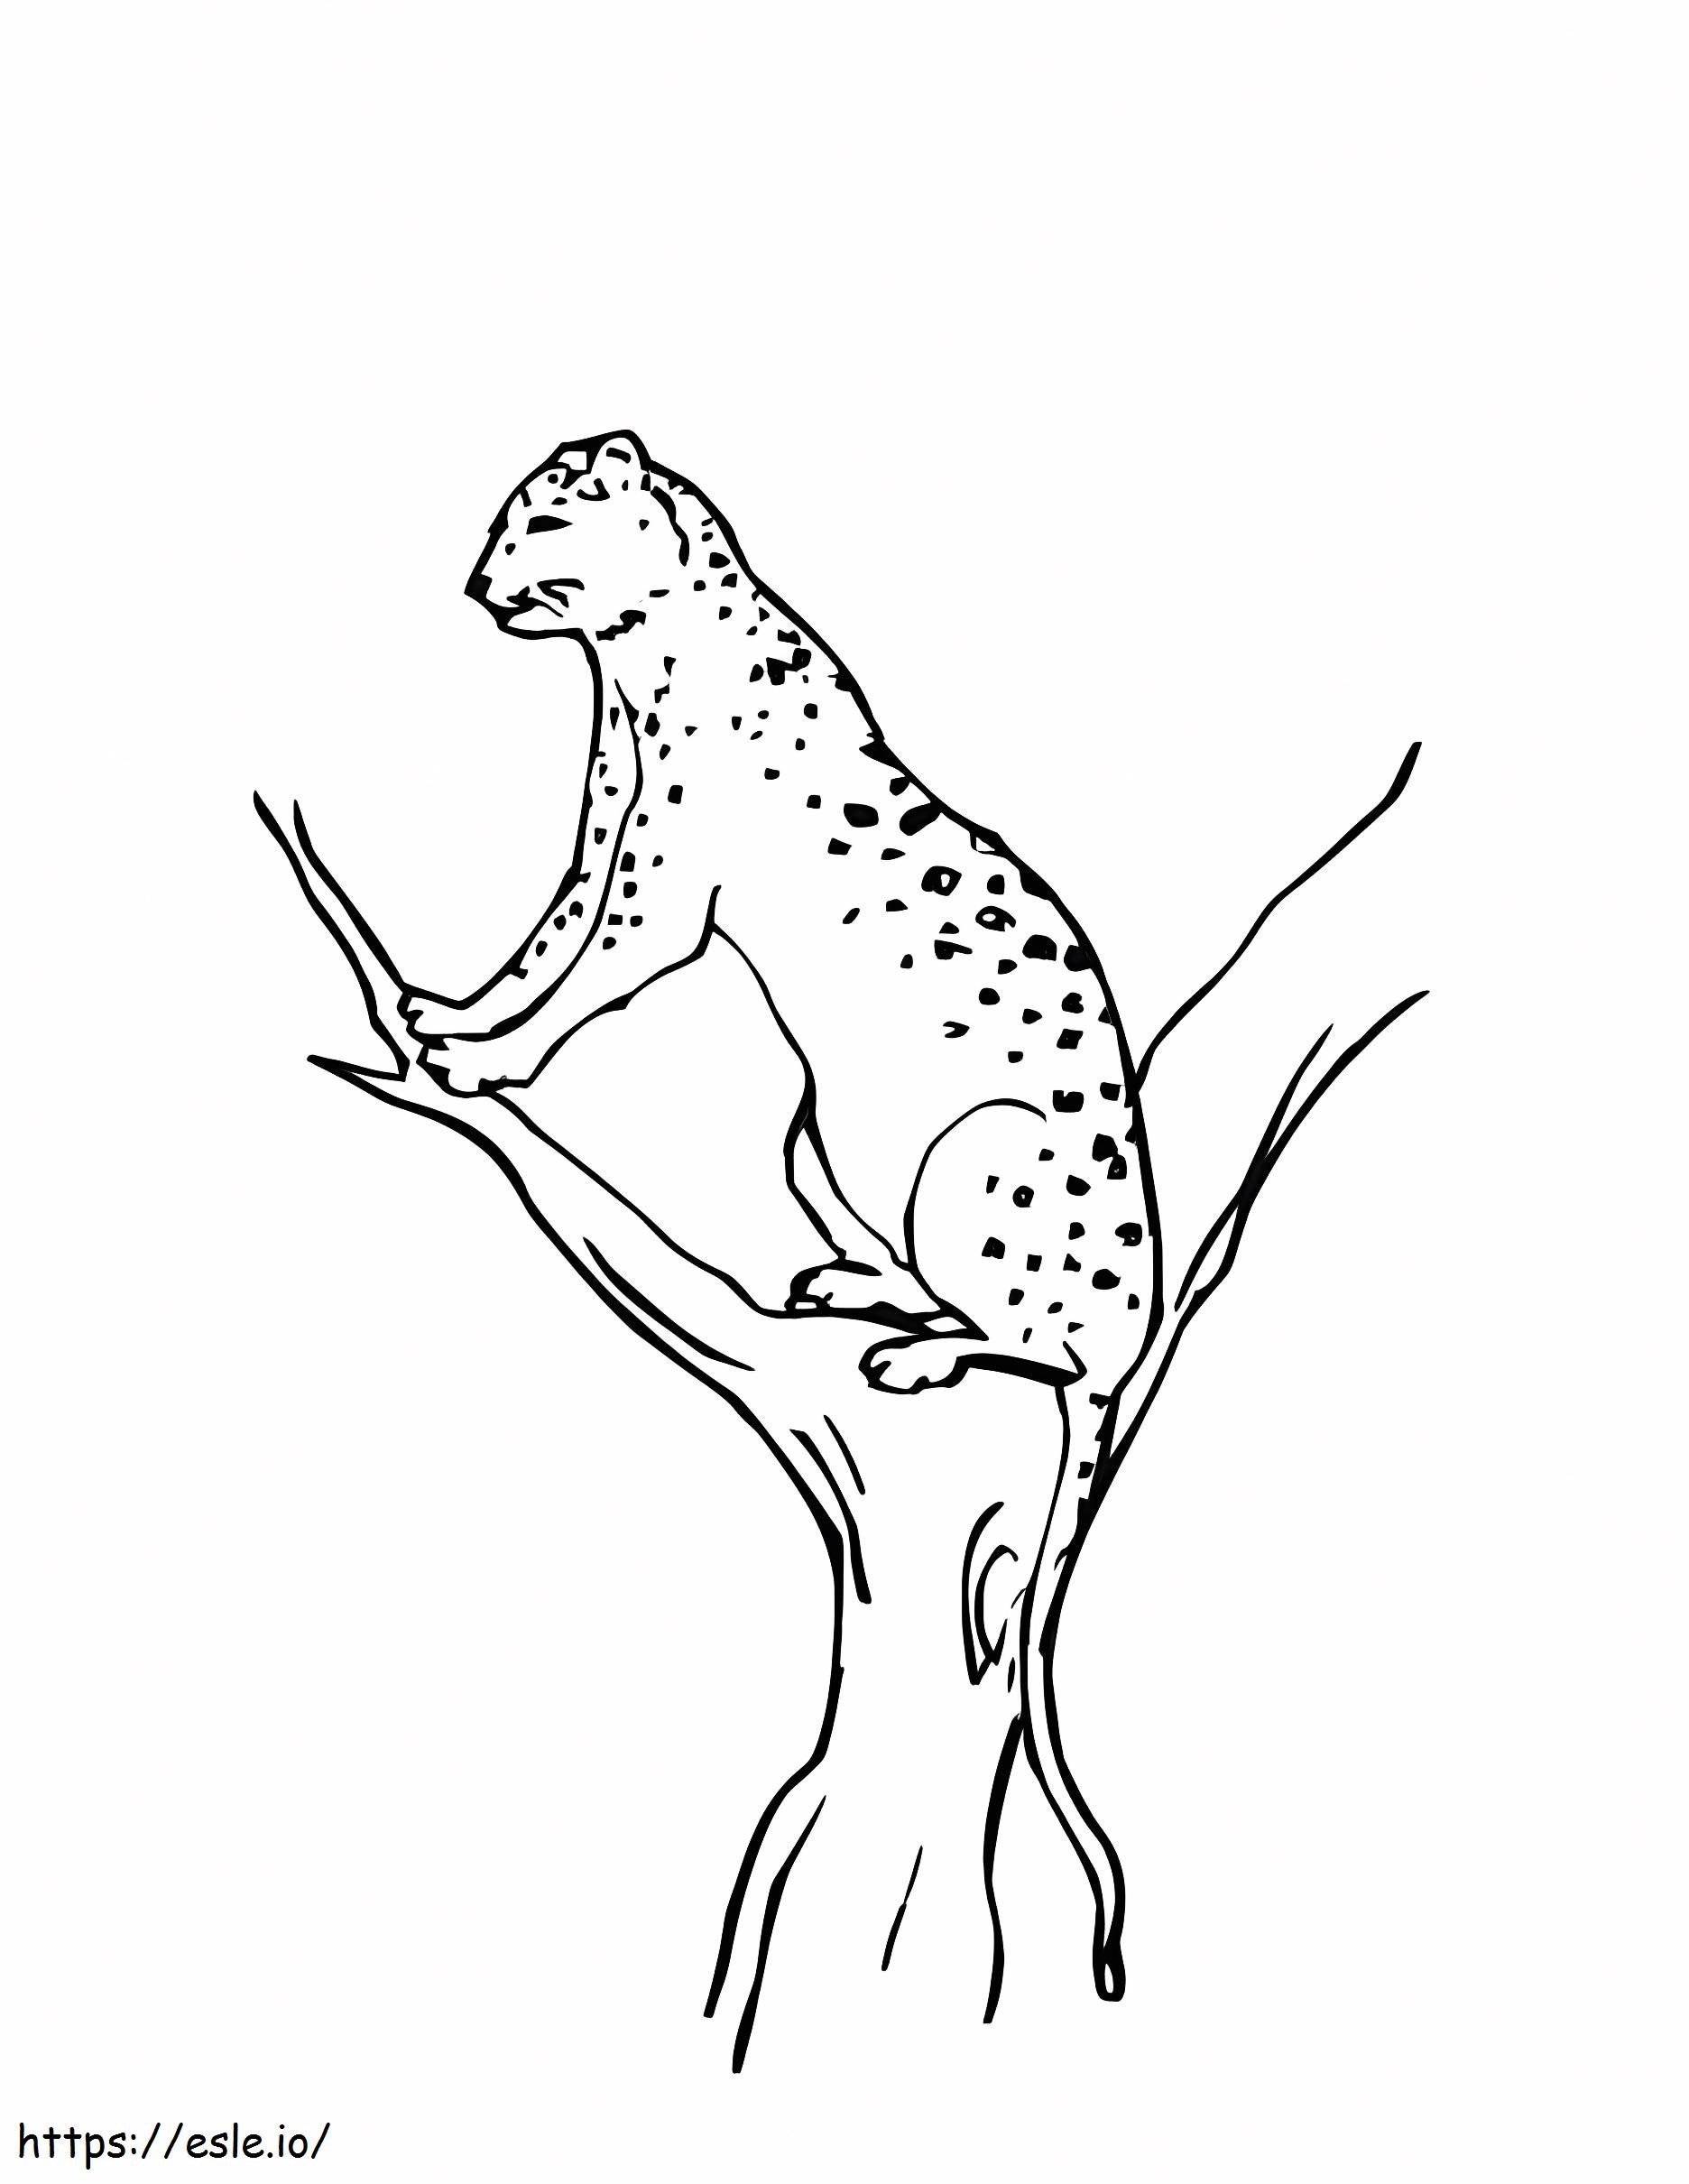 Leopardo delle nevi sul ramo di un albero da colorare